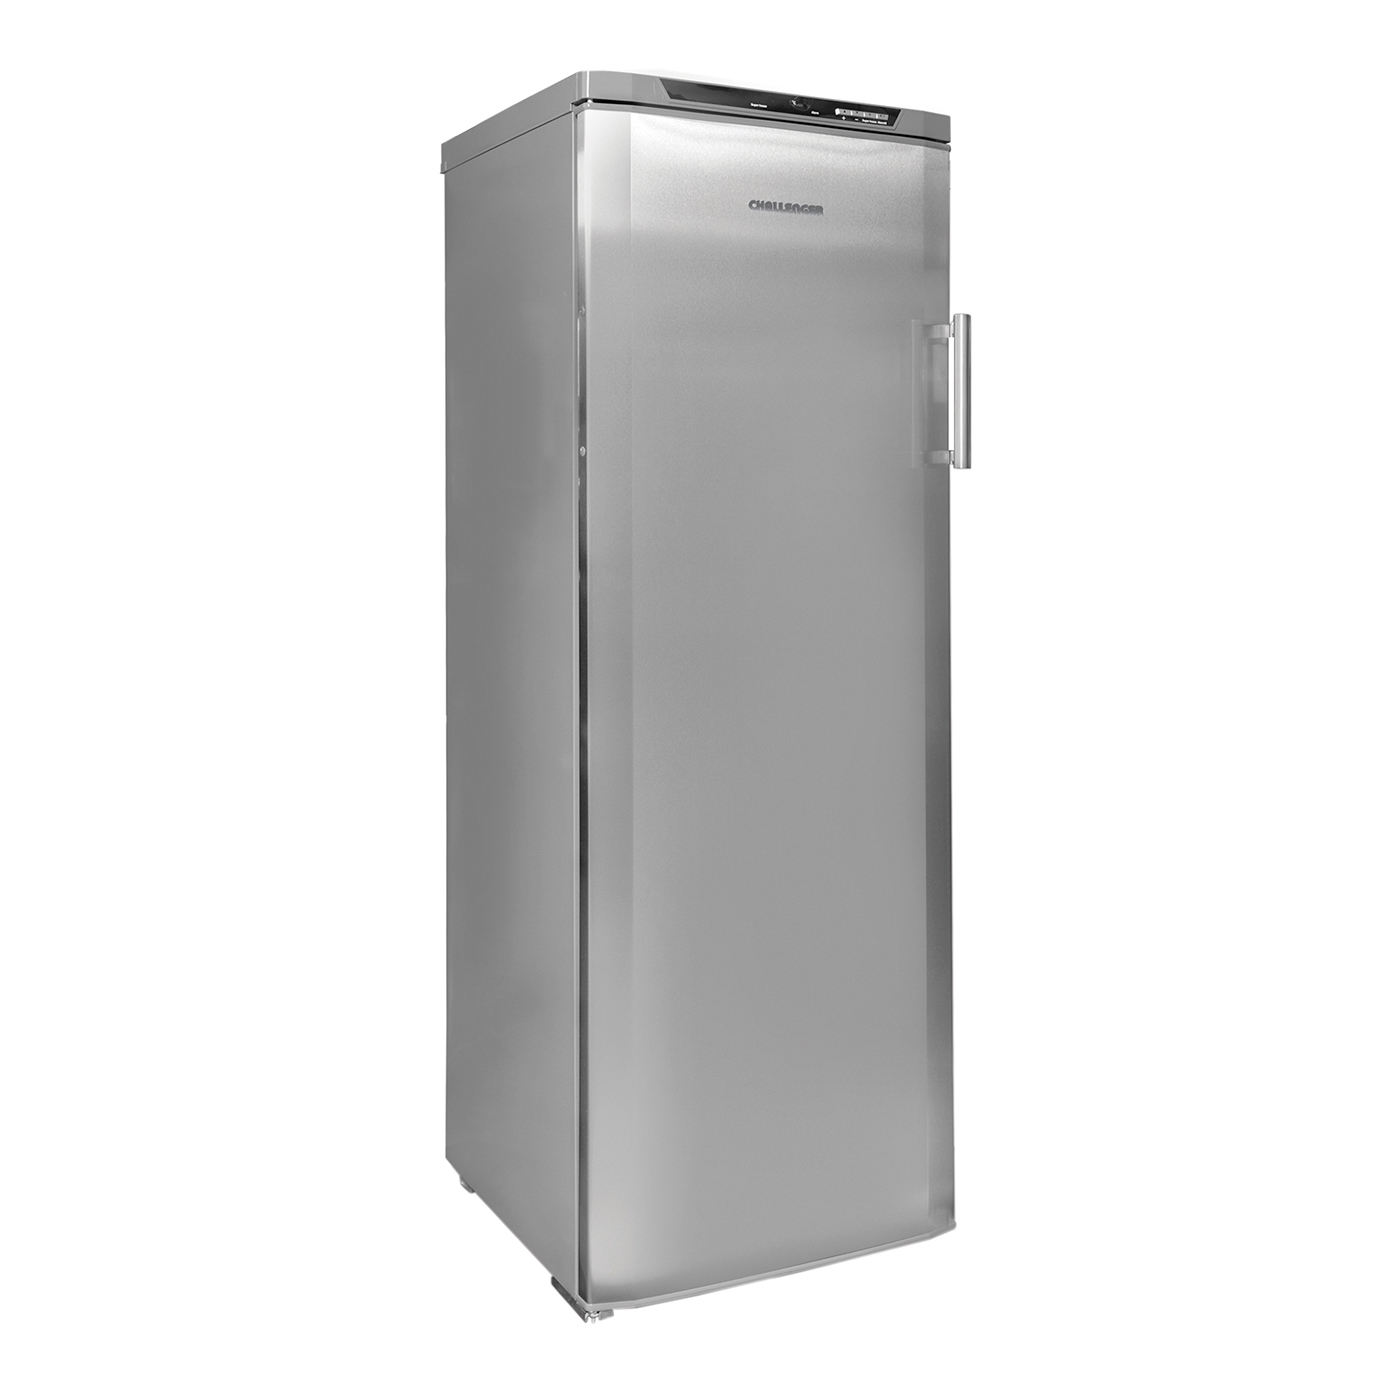 Refrigerador CHALLENGER No Frost 392 Litros CR380 Gris